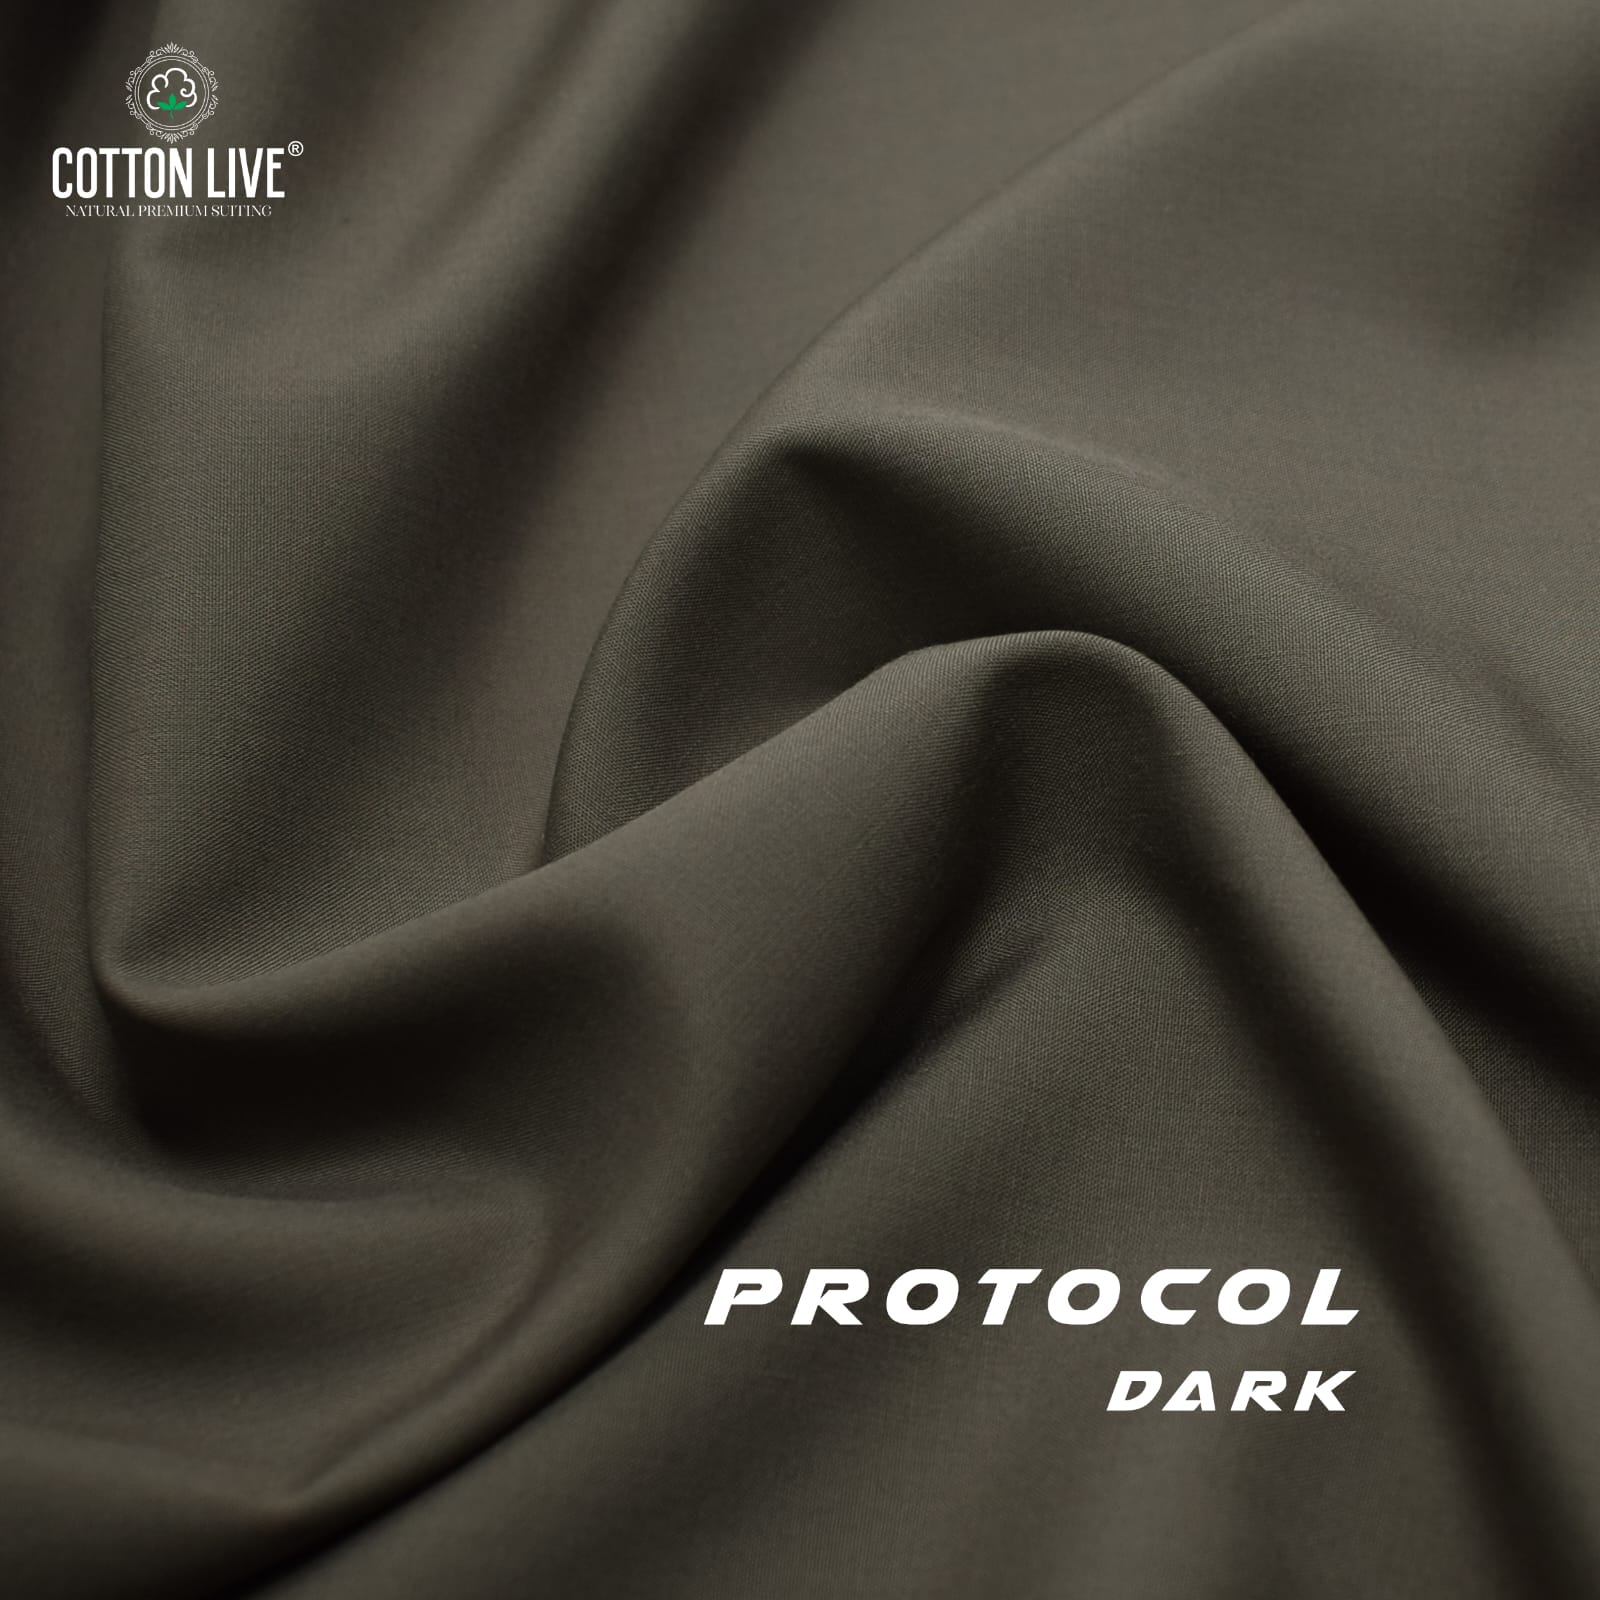 Wash n Wear Protocol Dark Multiple Colour